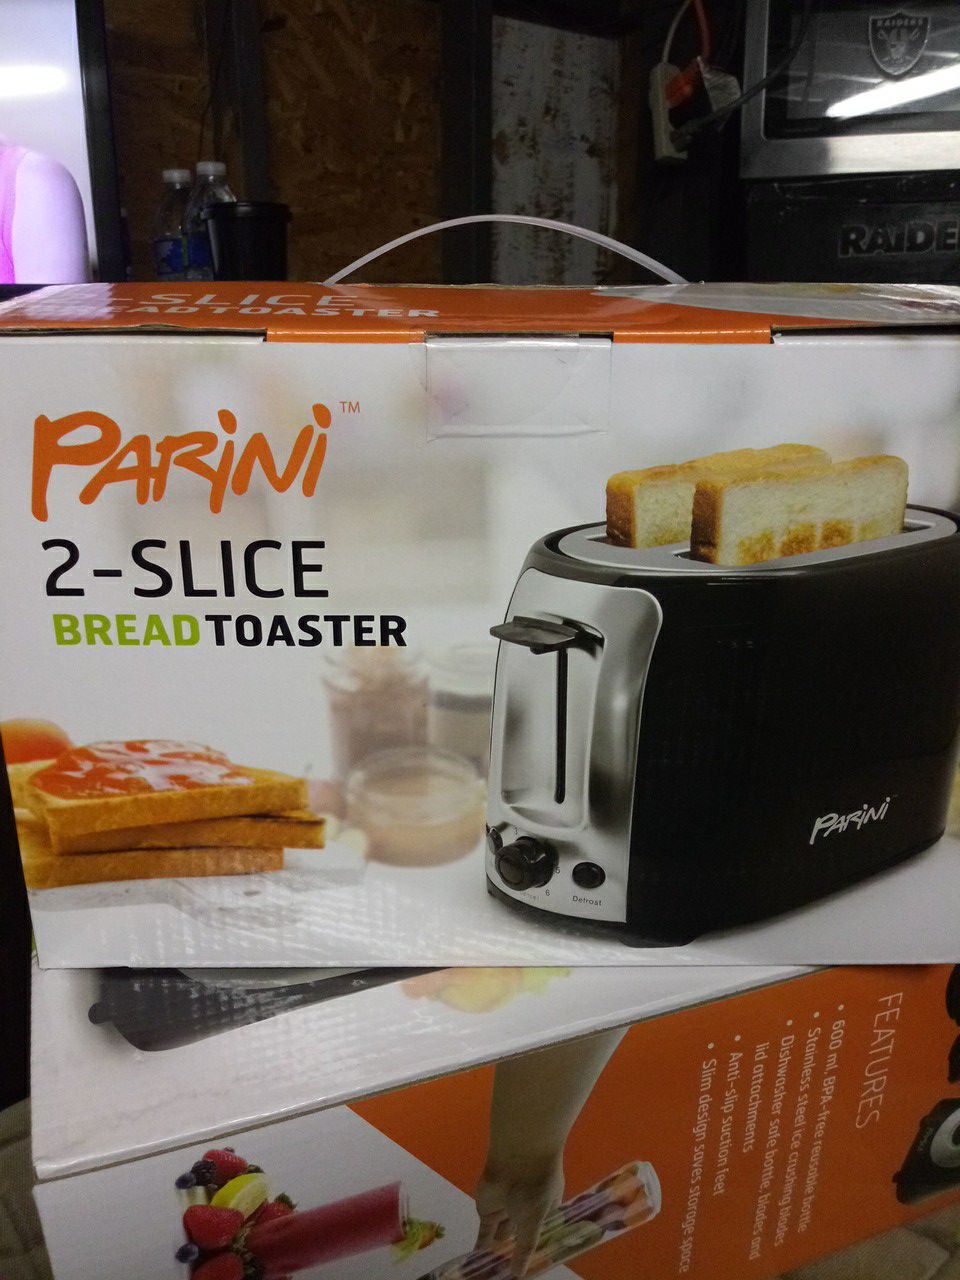 Pirini 2- slice bread toaster